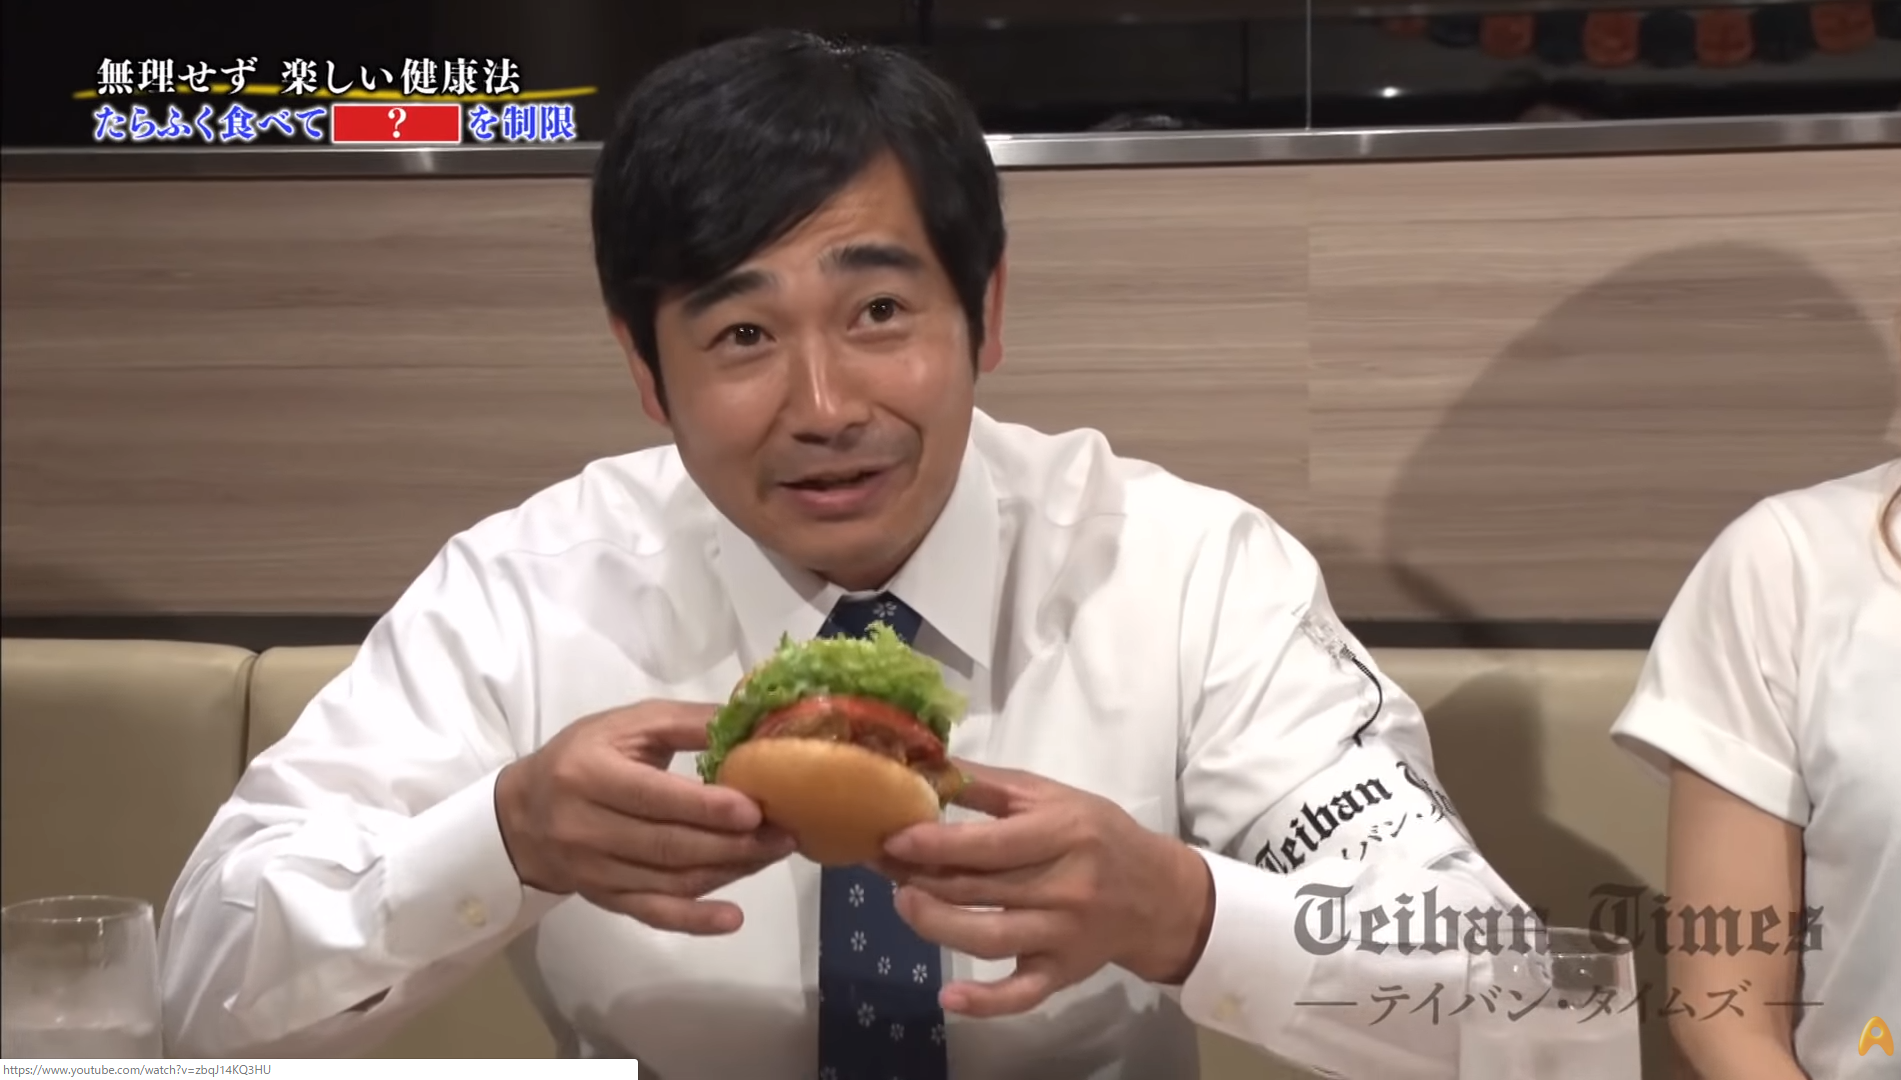 ハマカーンの浜谷健司さん「フェイクミートハンバーガー」を食す